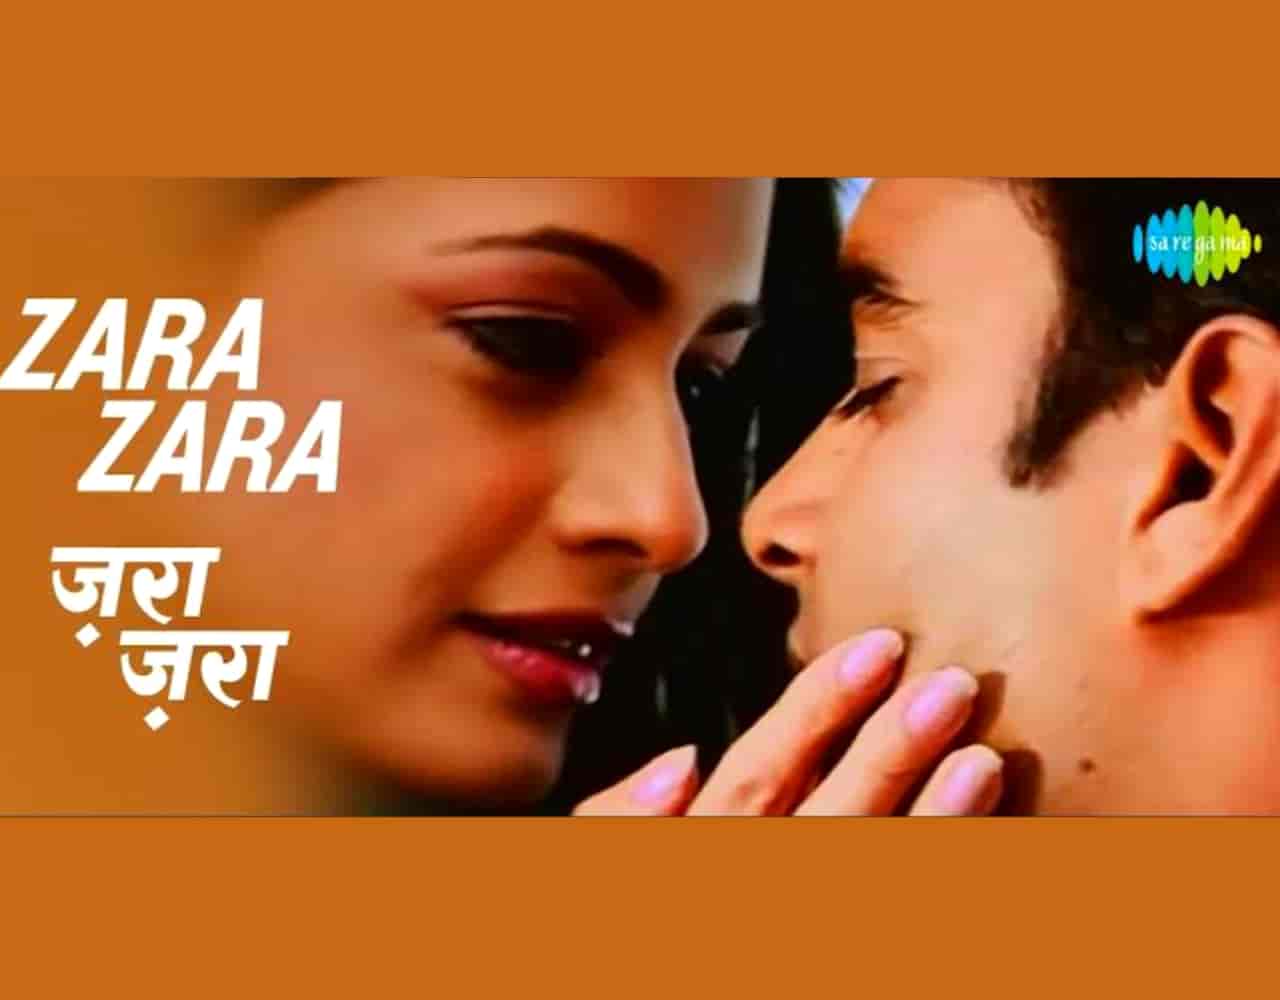 Zara Zara Hindi Romantic Song Lyrics, Sung By Bombay Jayashri.